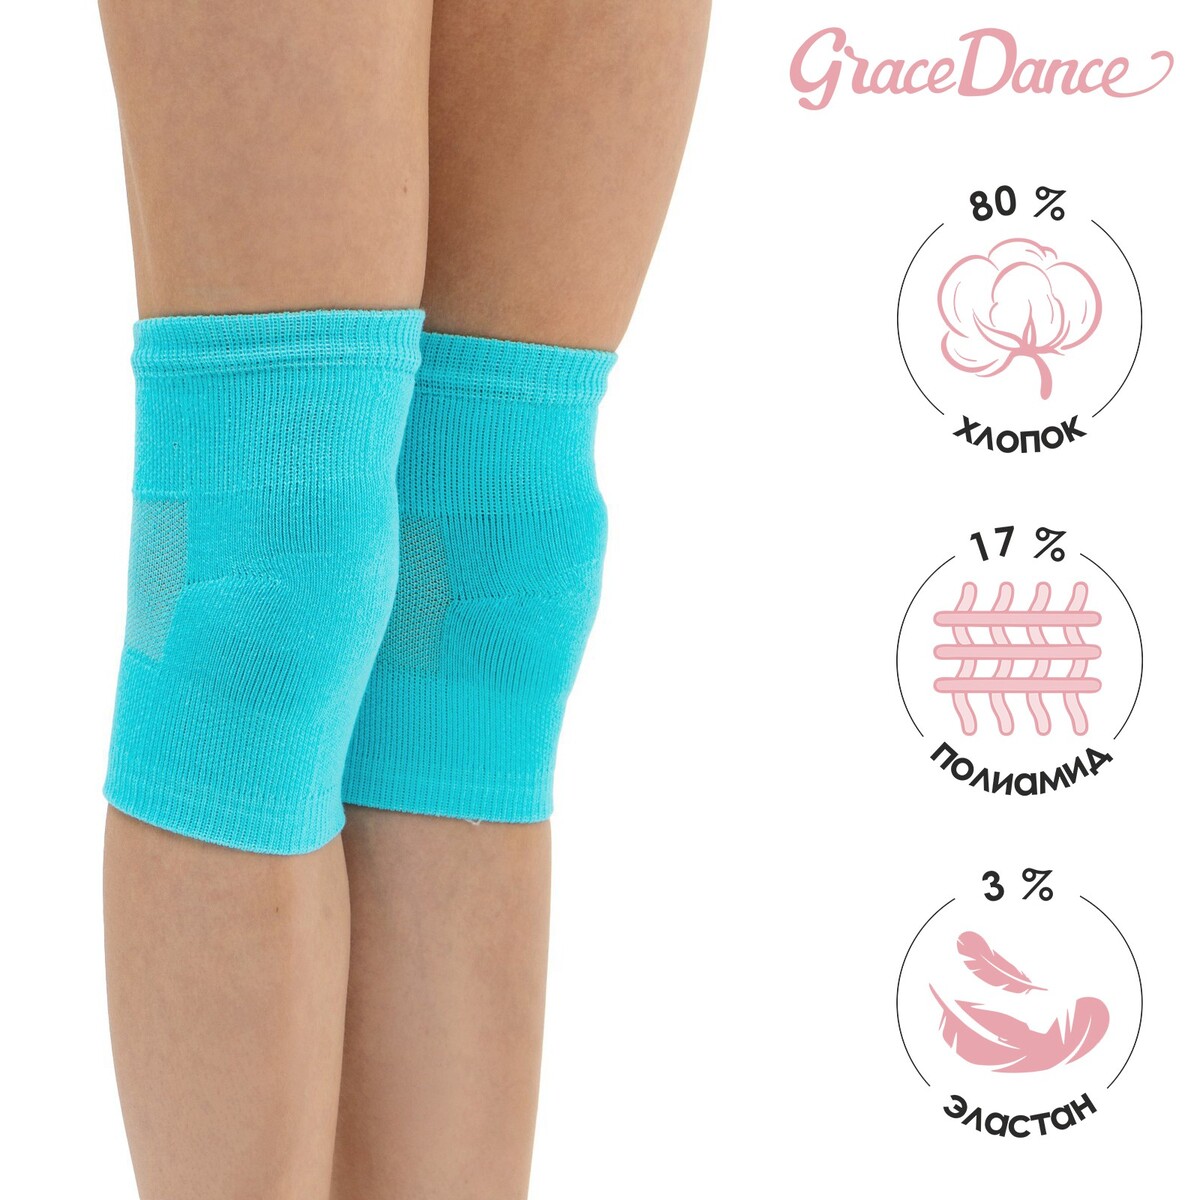 Наколенники для гимнастики и танцев grace dance №2, р. хs, цвет бирюзовый Grace Dance